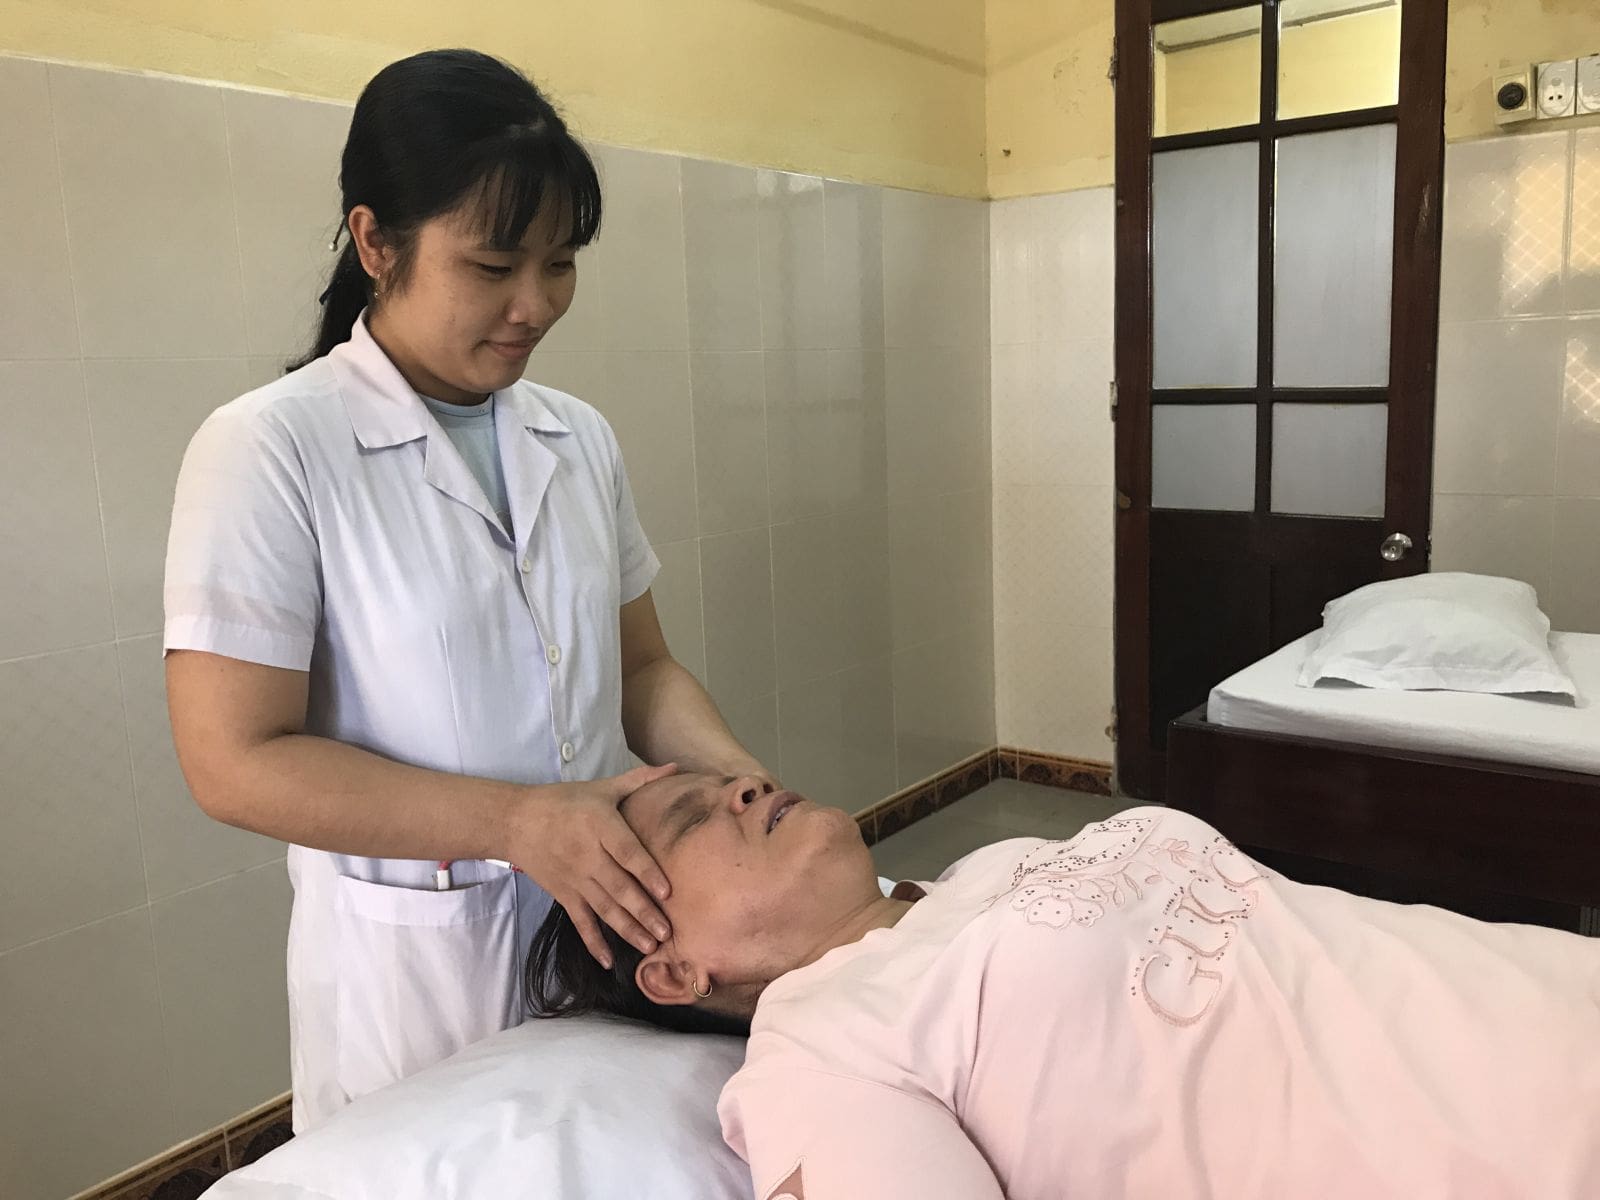 Top 8 Địa Chỉ Massage Khiếm Thị Ở Sài Gòn Cực Thư Giãn Hiệu Quả